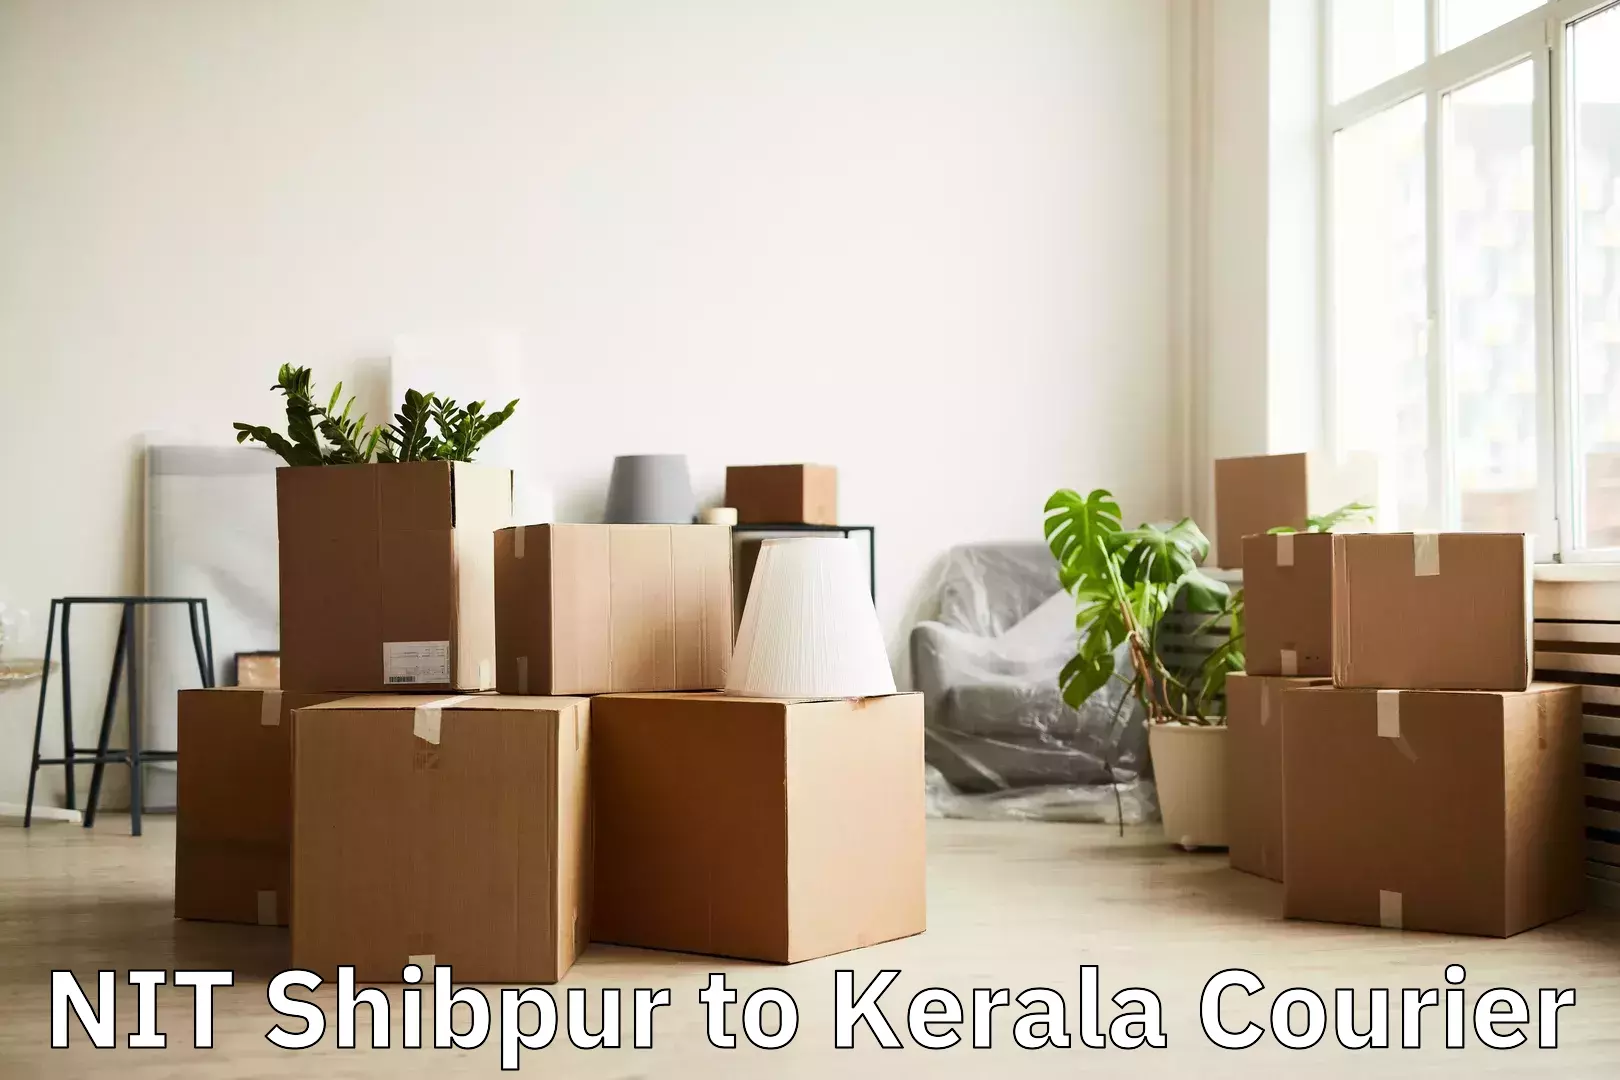 Luggage shipment tracking NIT Shibpur to Kochi